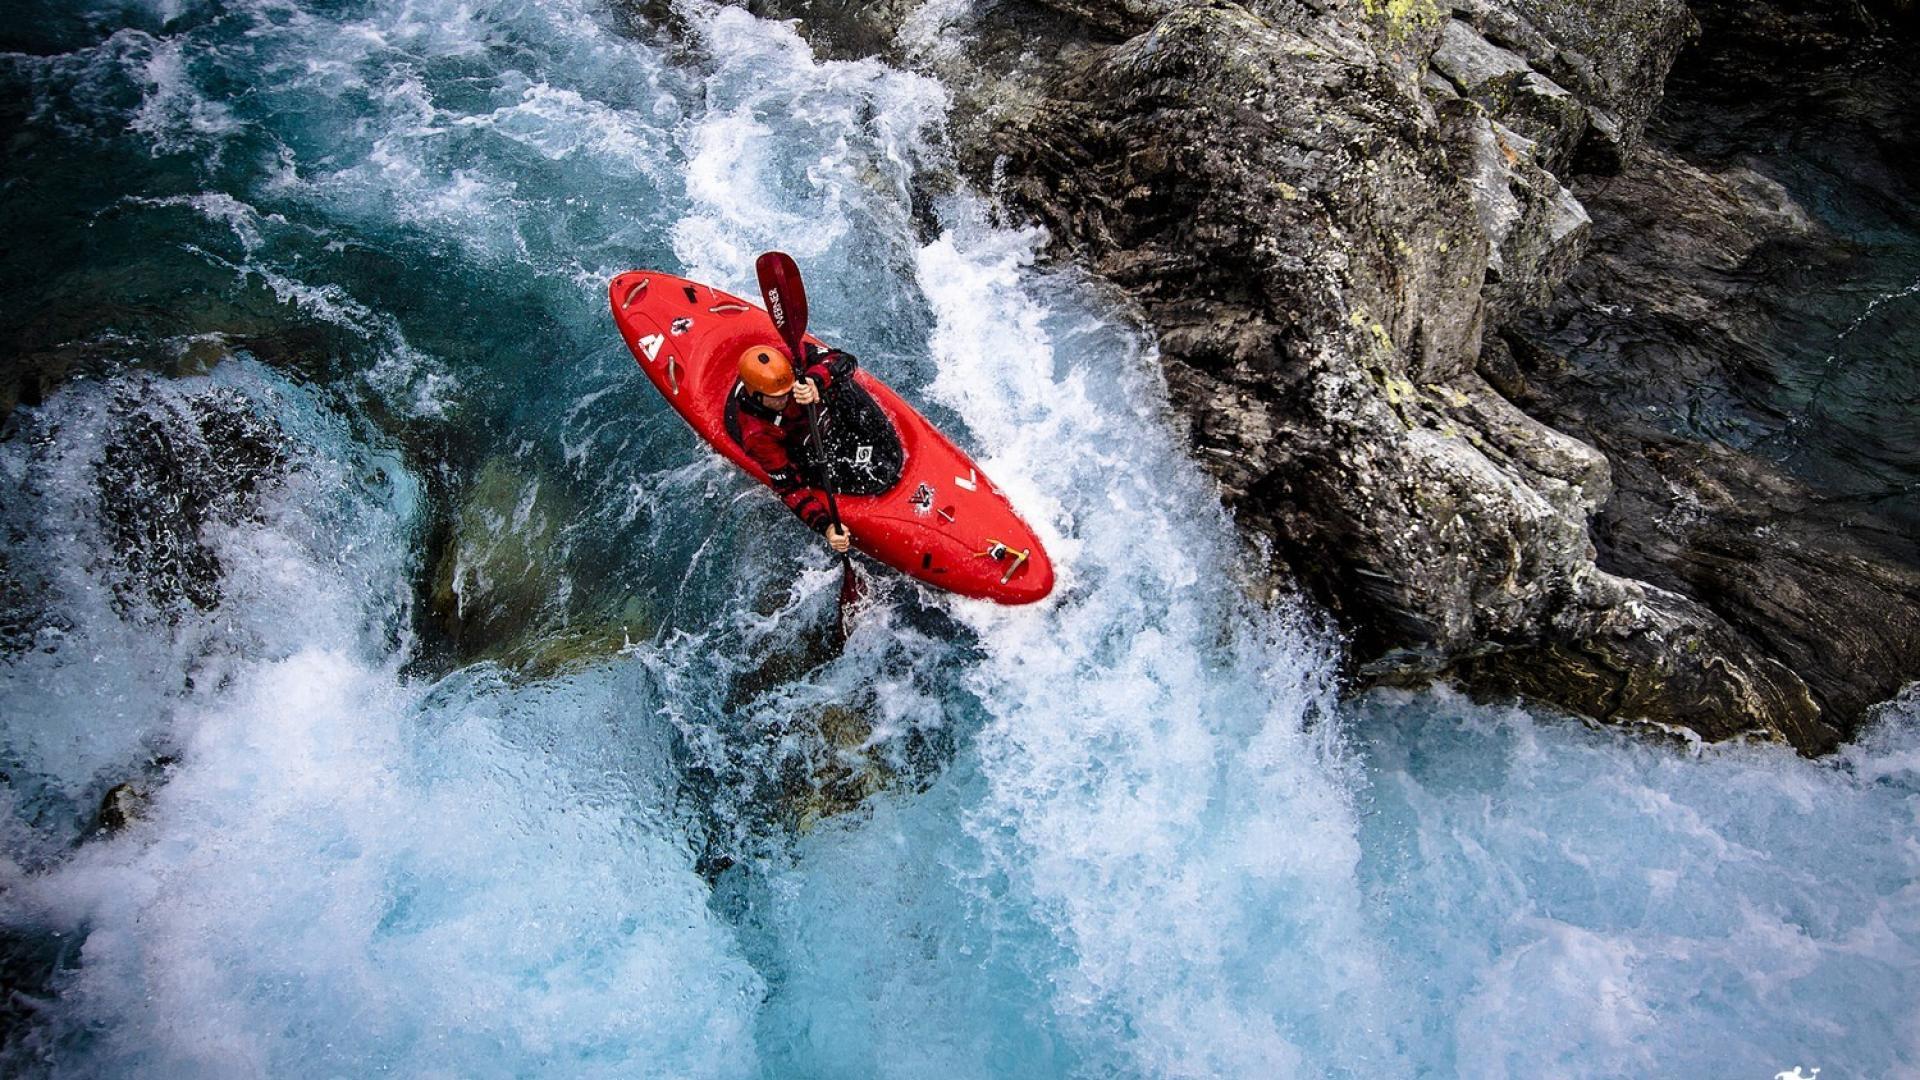 Tìm kiếm những trải nghiệm thử thách và đầy kích thích? Hãy xem hình nền Whitewater Kayaking để ngắm nhìn những màn đua thuyền trên những dòng sông đầy thử thách. Hình ảnh này sẽ mang đến cho bạn niềm hứng khởi và sự thử thách đầy kích thích.